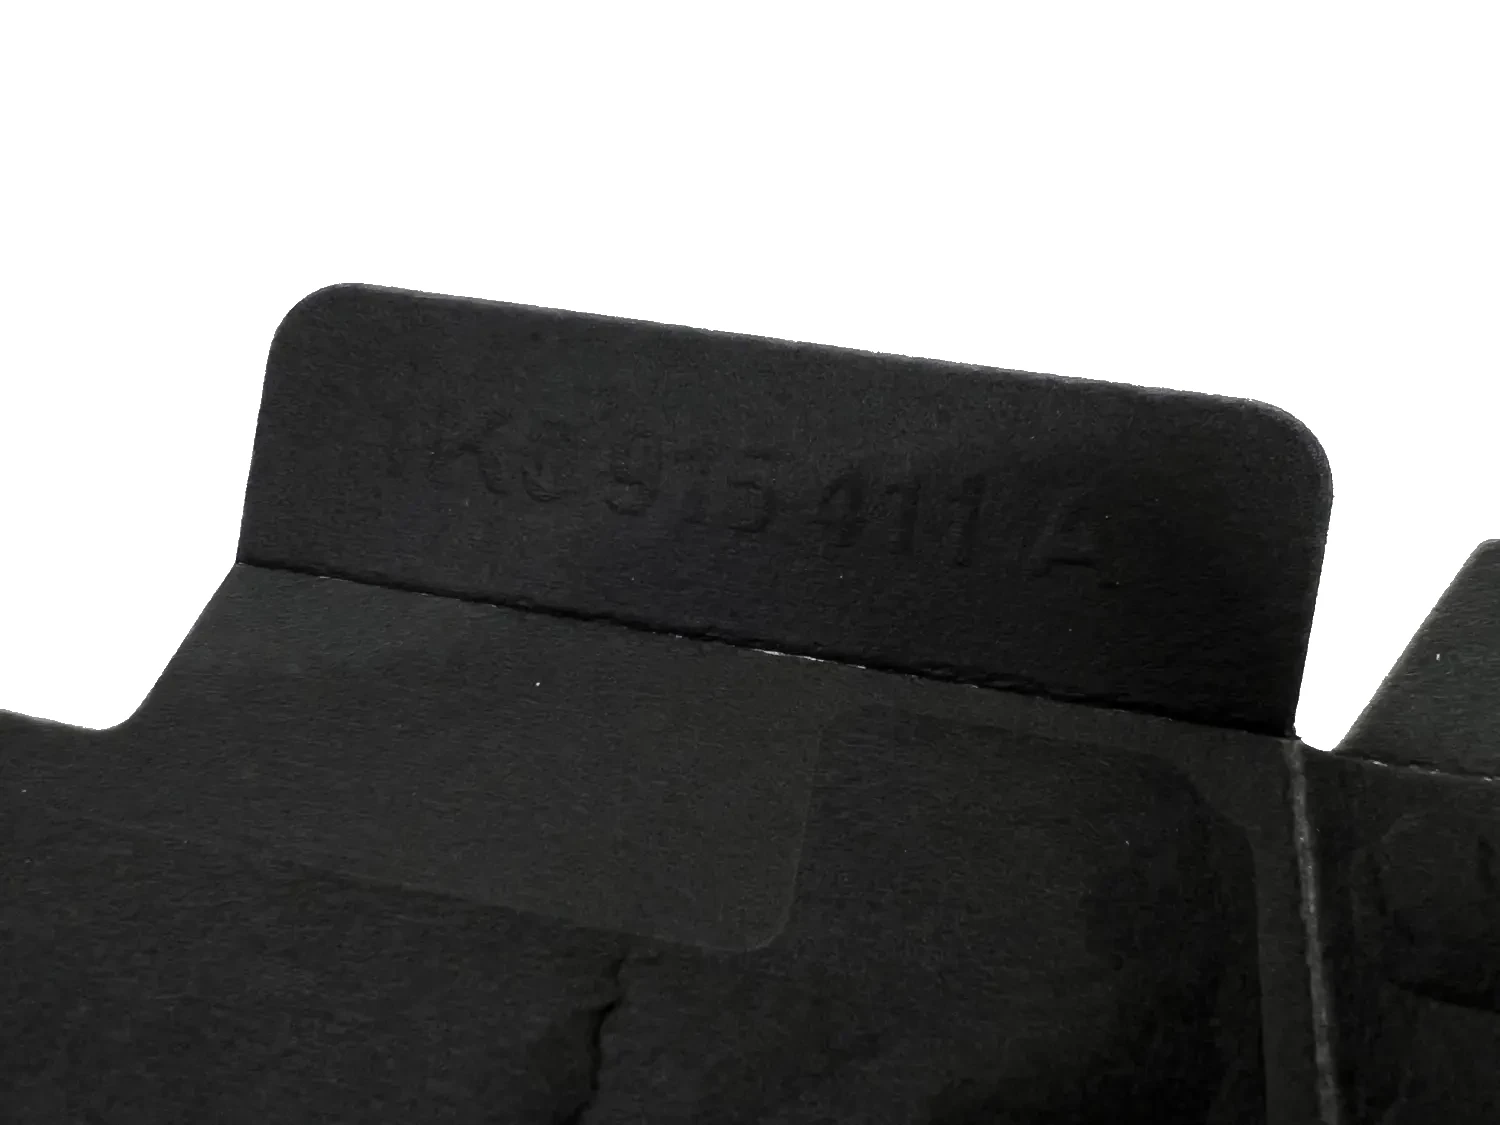 Vw Golf Audi Seat Skoda Batterie Schutzhülle Tasche Thermoschutz  Frostschutz Batterie Hülle